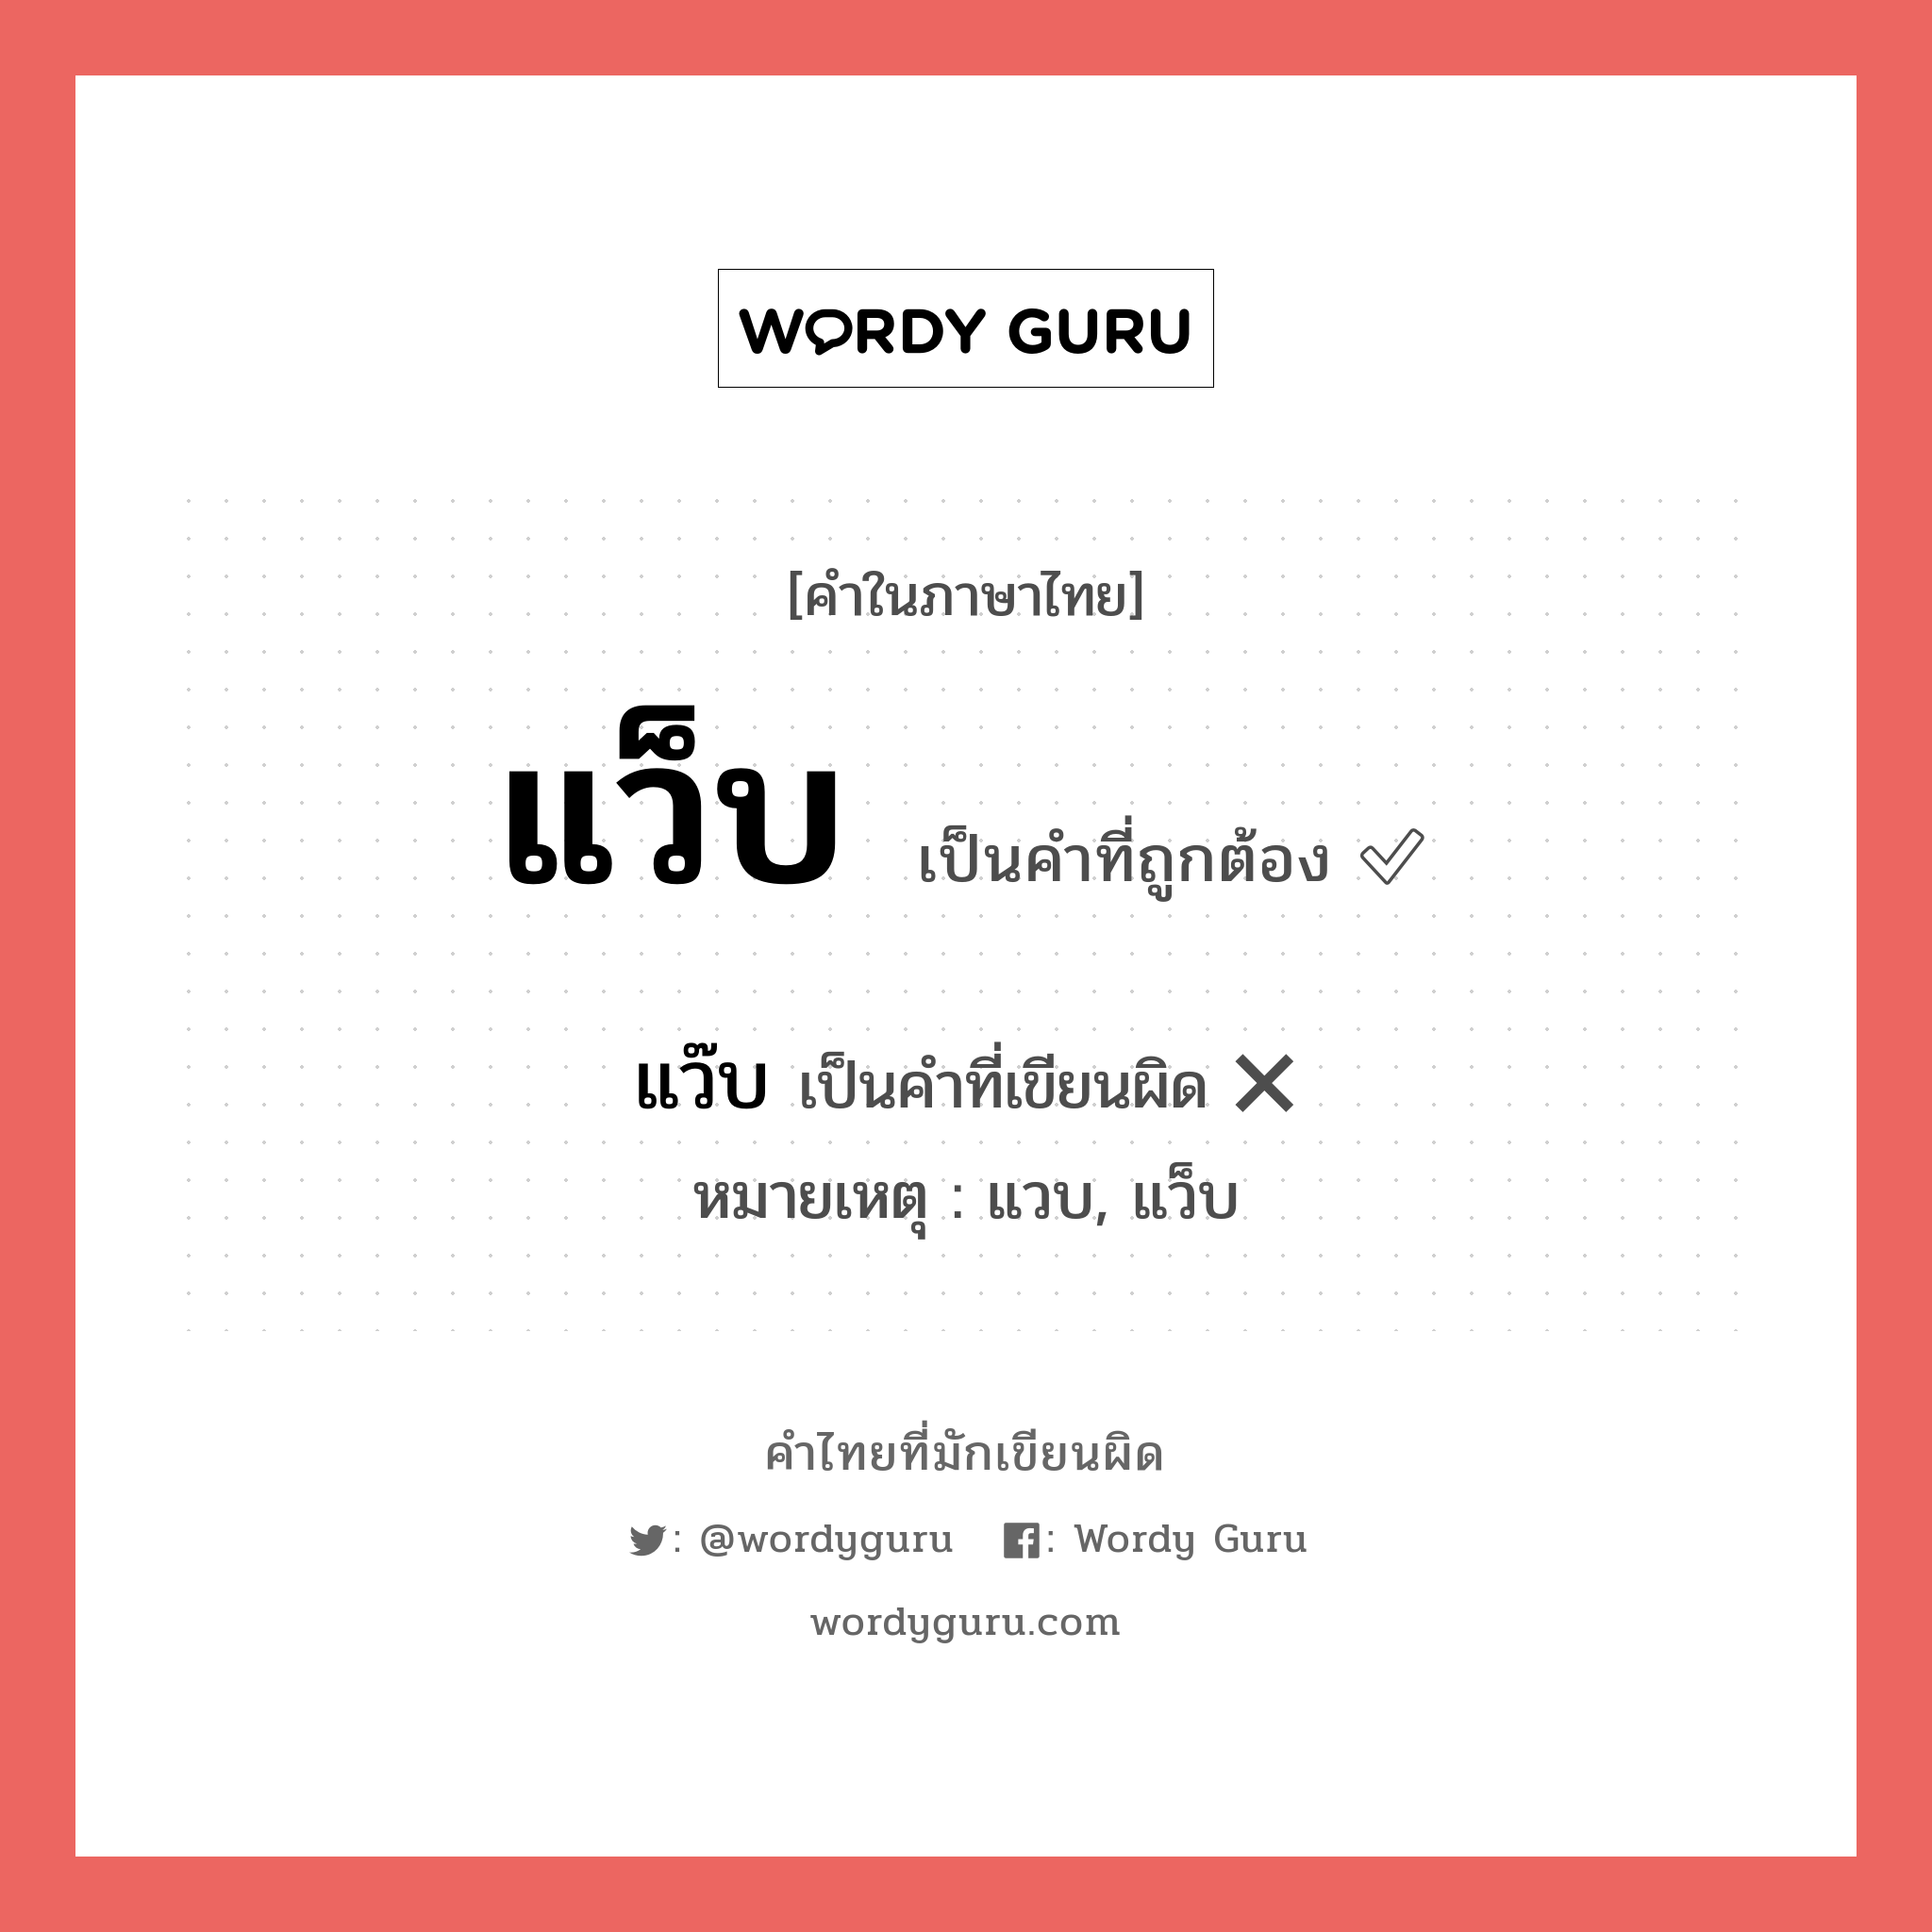 แว็บ หรือ แว๊บ คำไหนเขียนถูก?, คำในภาษาไทยที่มักเขียนผิด แว็บ คำที่ผิด ❌ แว๊บ หมายเหตุ แวบ, แว็บ